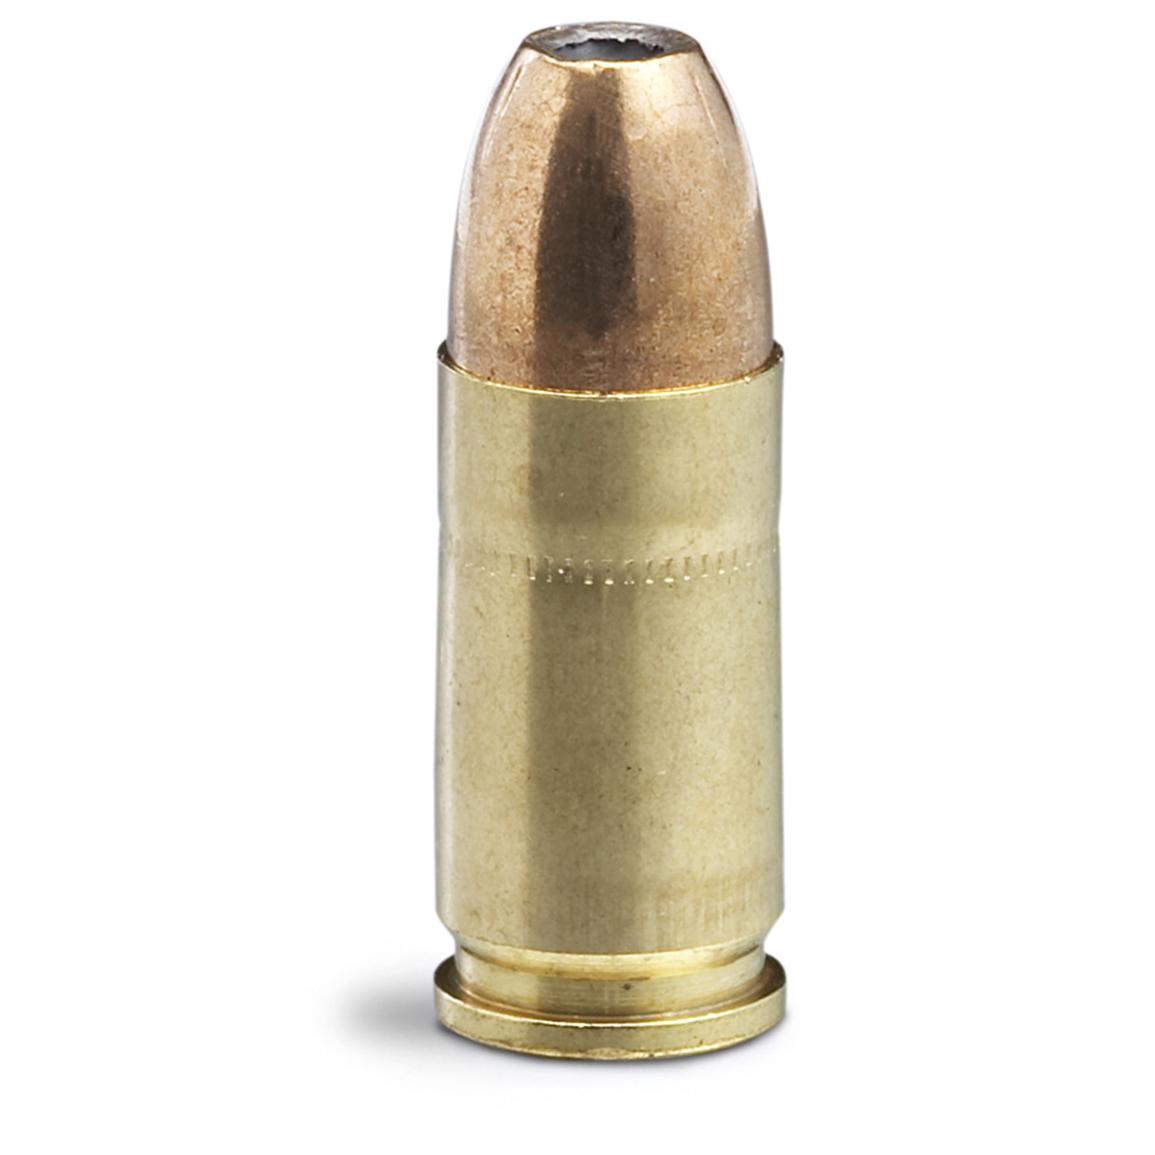 9mm bullets rip